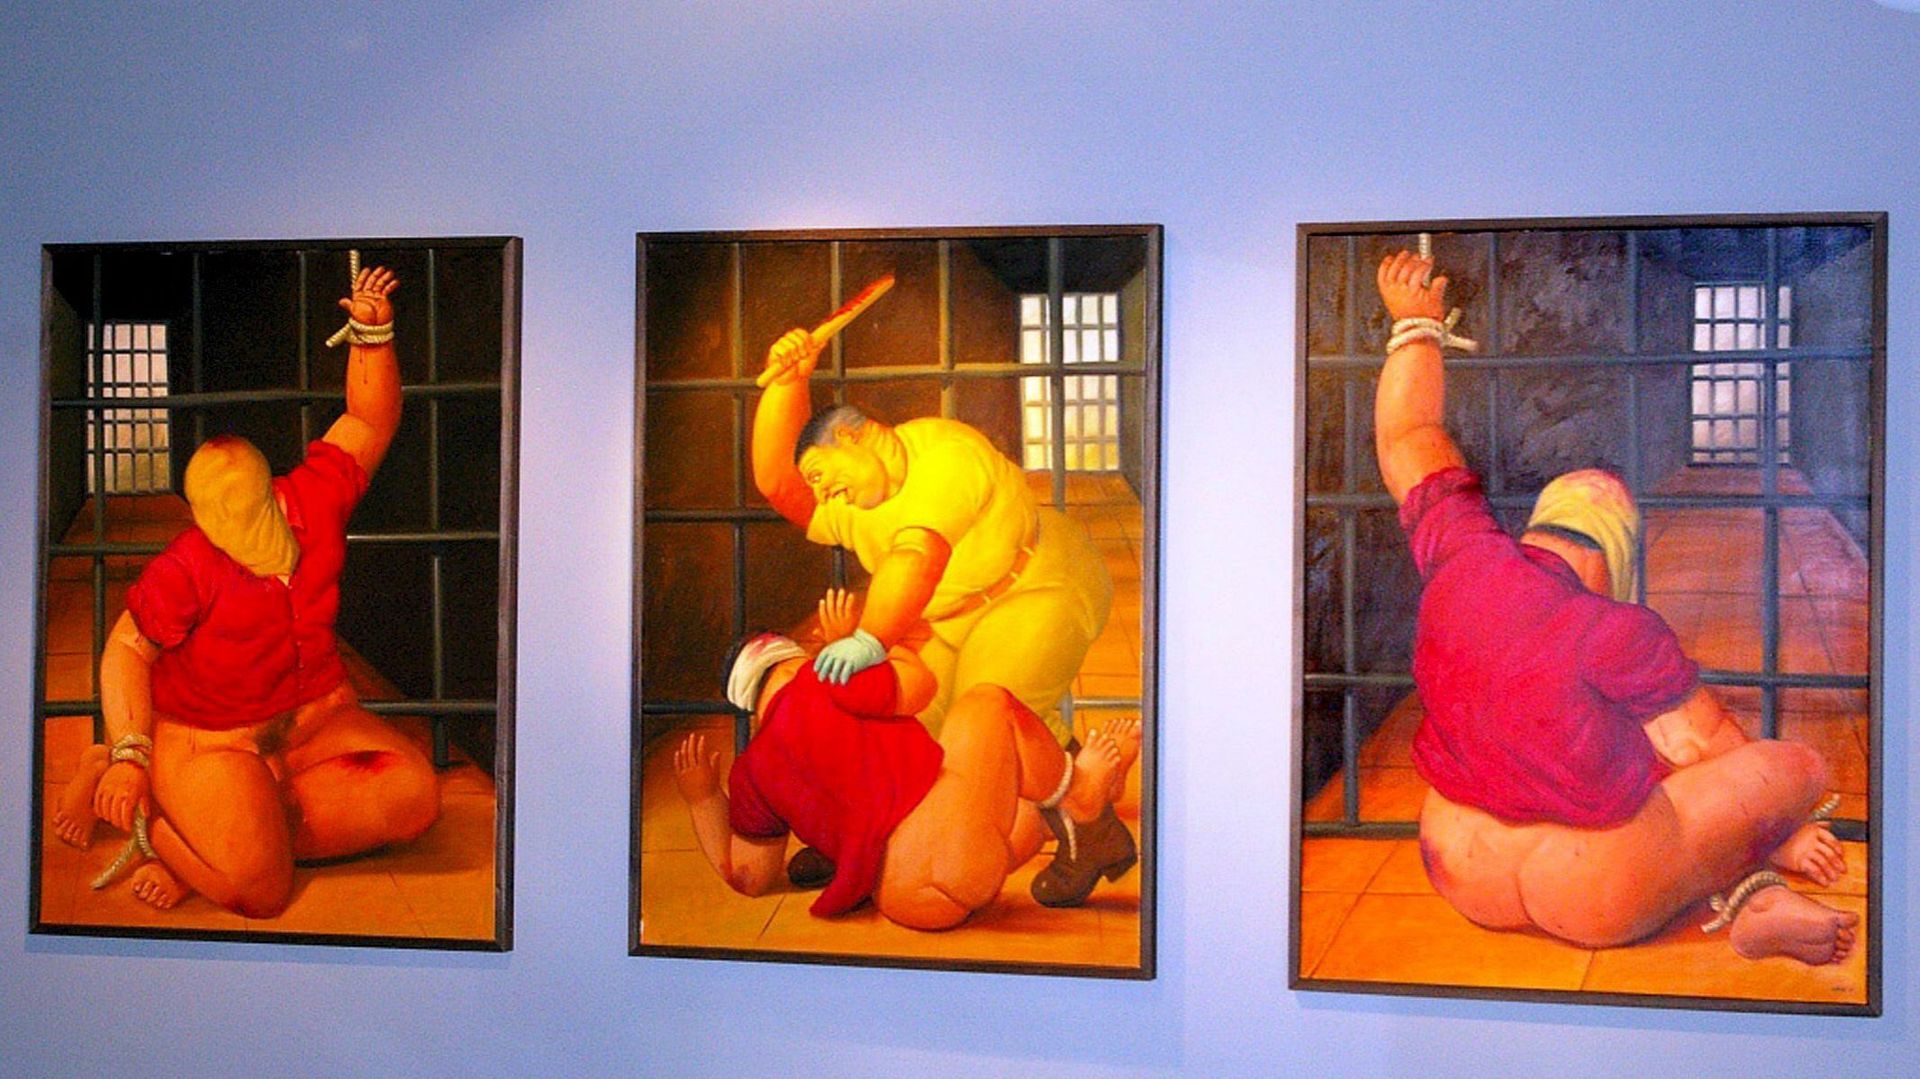 Manifeste pour la dignité humaine avec Fernando Botero